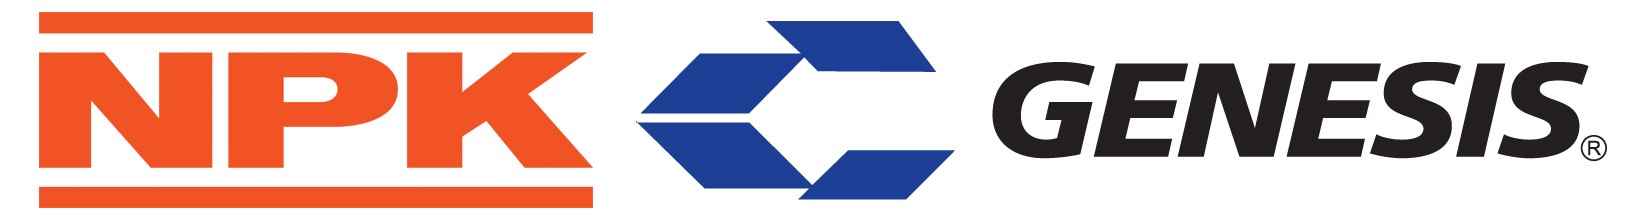 NPK & Genesis logos